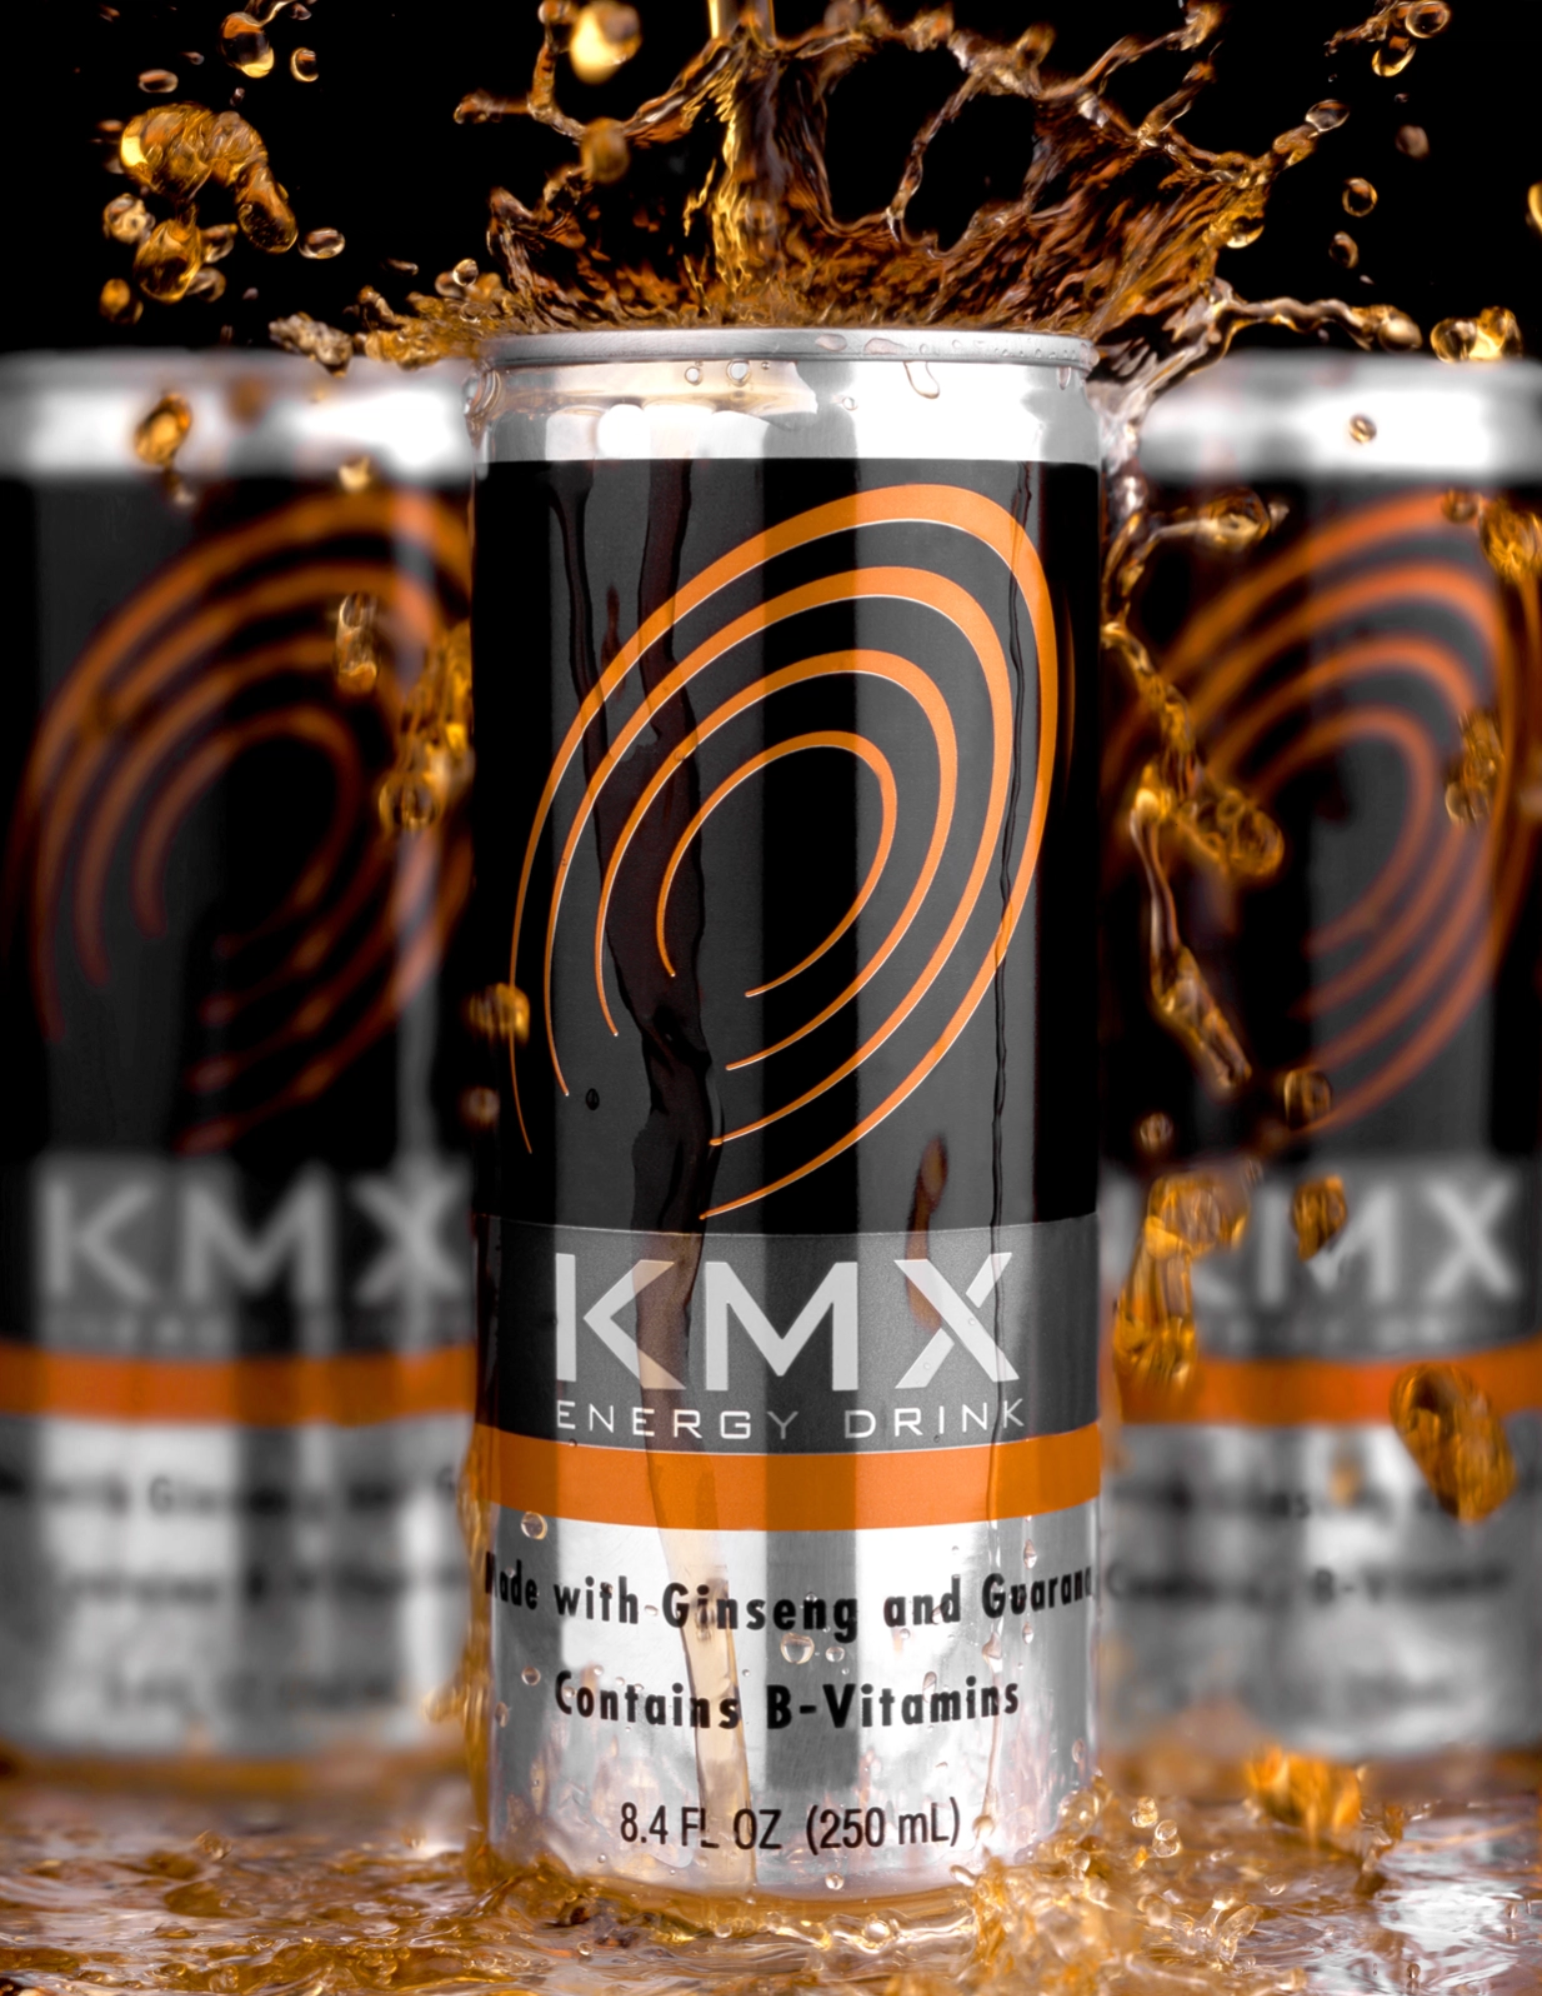 KMX Energy Drink Packaging